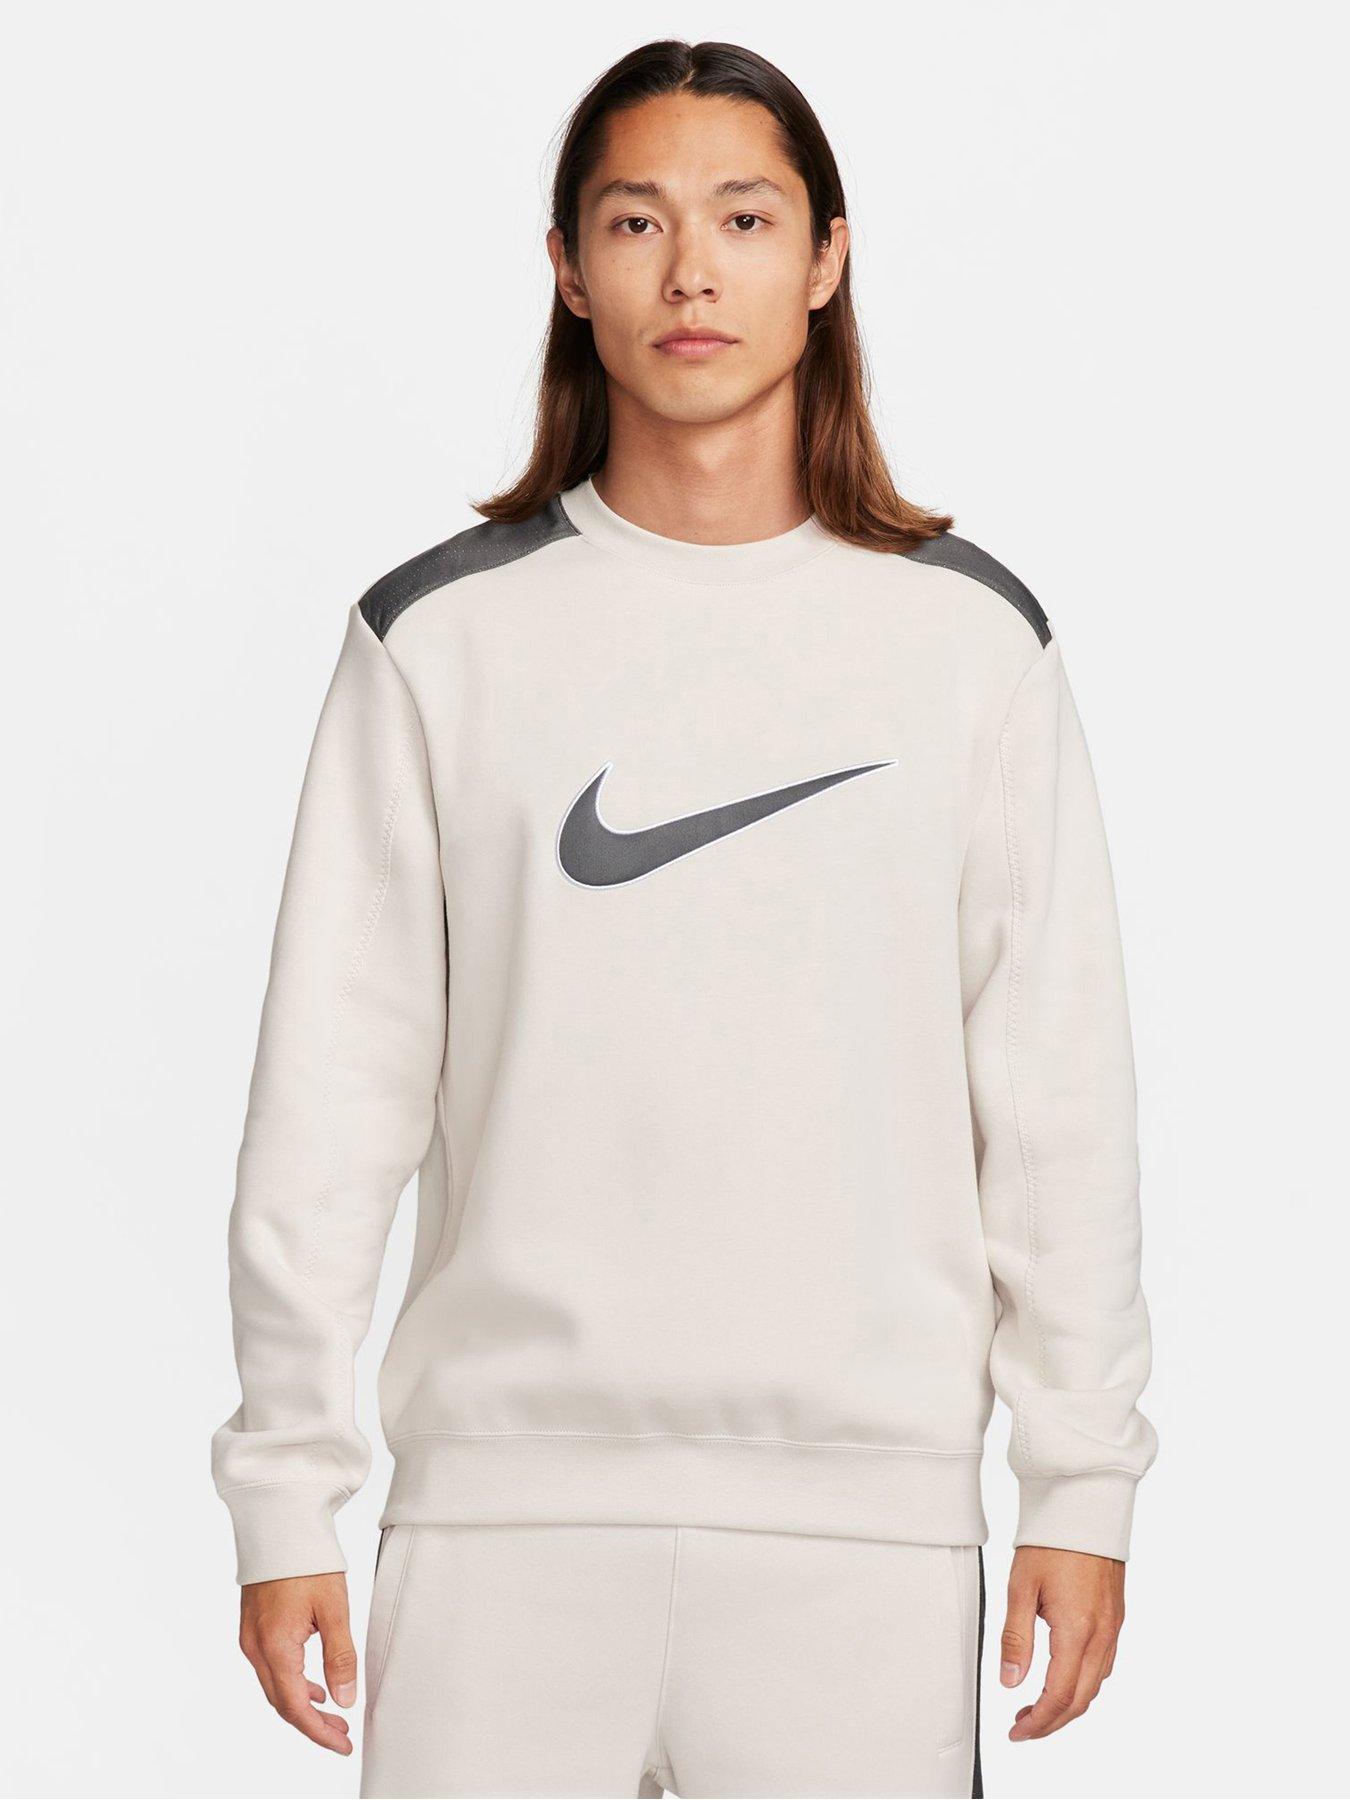 Nike Mens Swoosh Fleece Crew Neck Sweatshirt - Grey